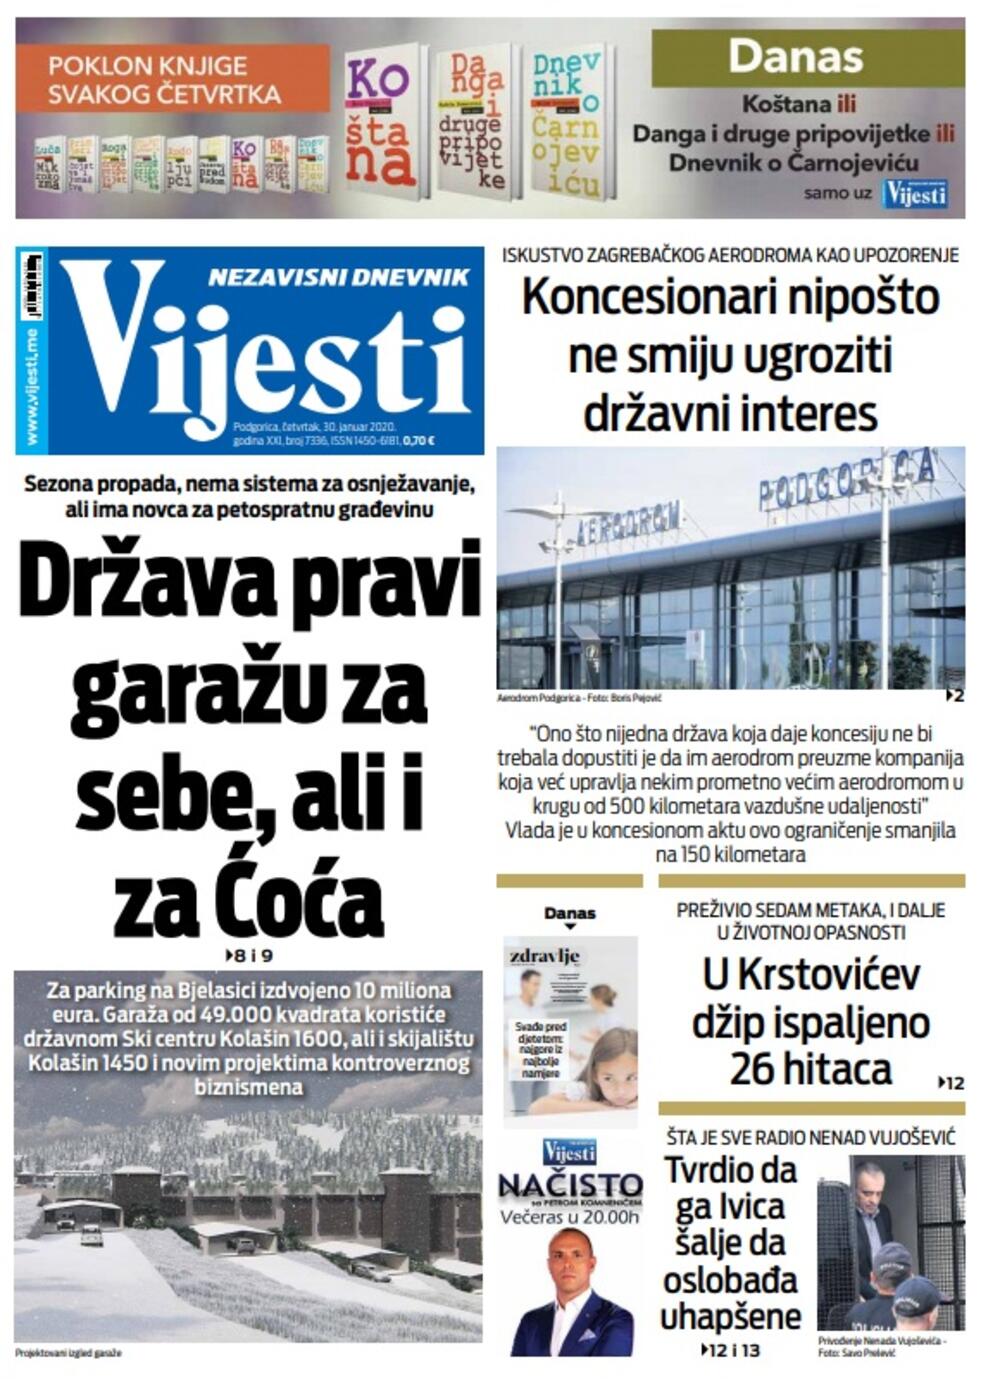 Naslovna strana "Vijesti" za 30. januar 2020. godine, Foto: "Vijesti"